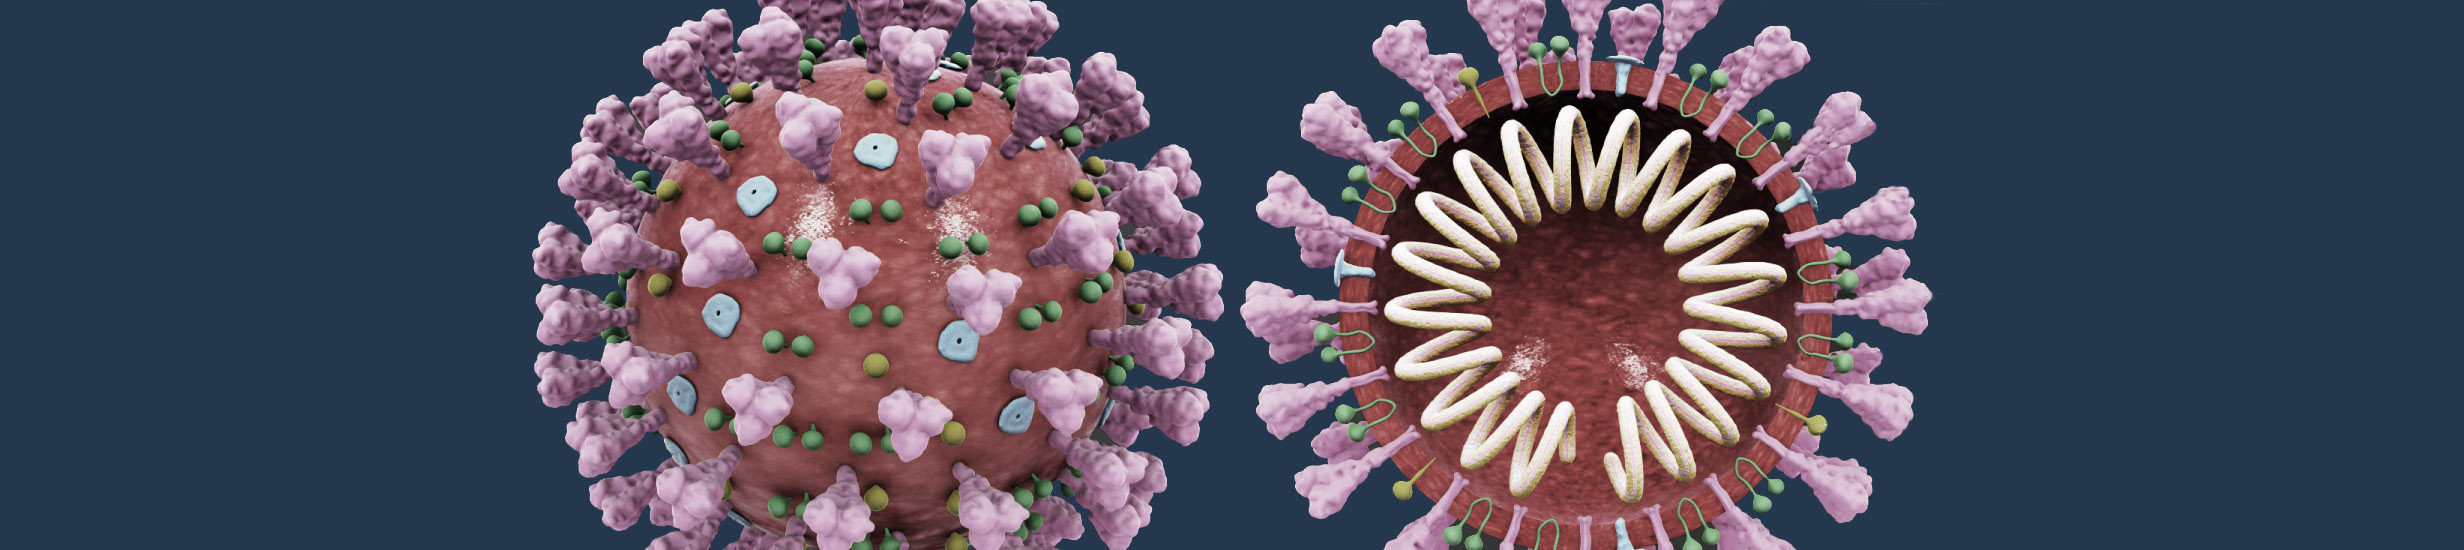 Aktualne informacje w związku z przeciwdziałaniem rozprzestrzenianiu się wirusa SARS-CoV-2 na PK